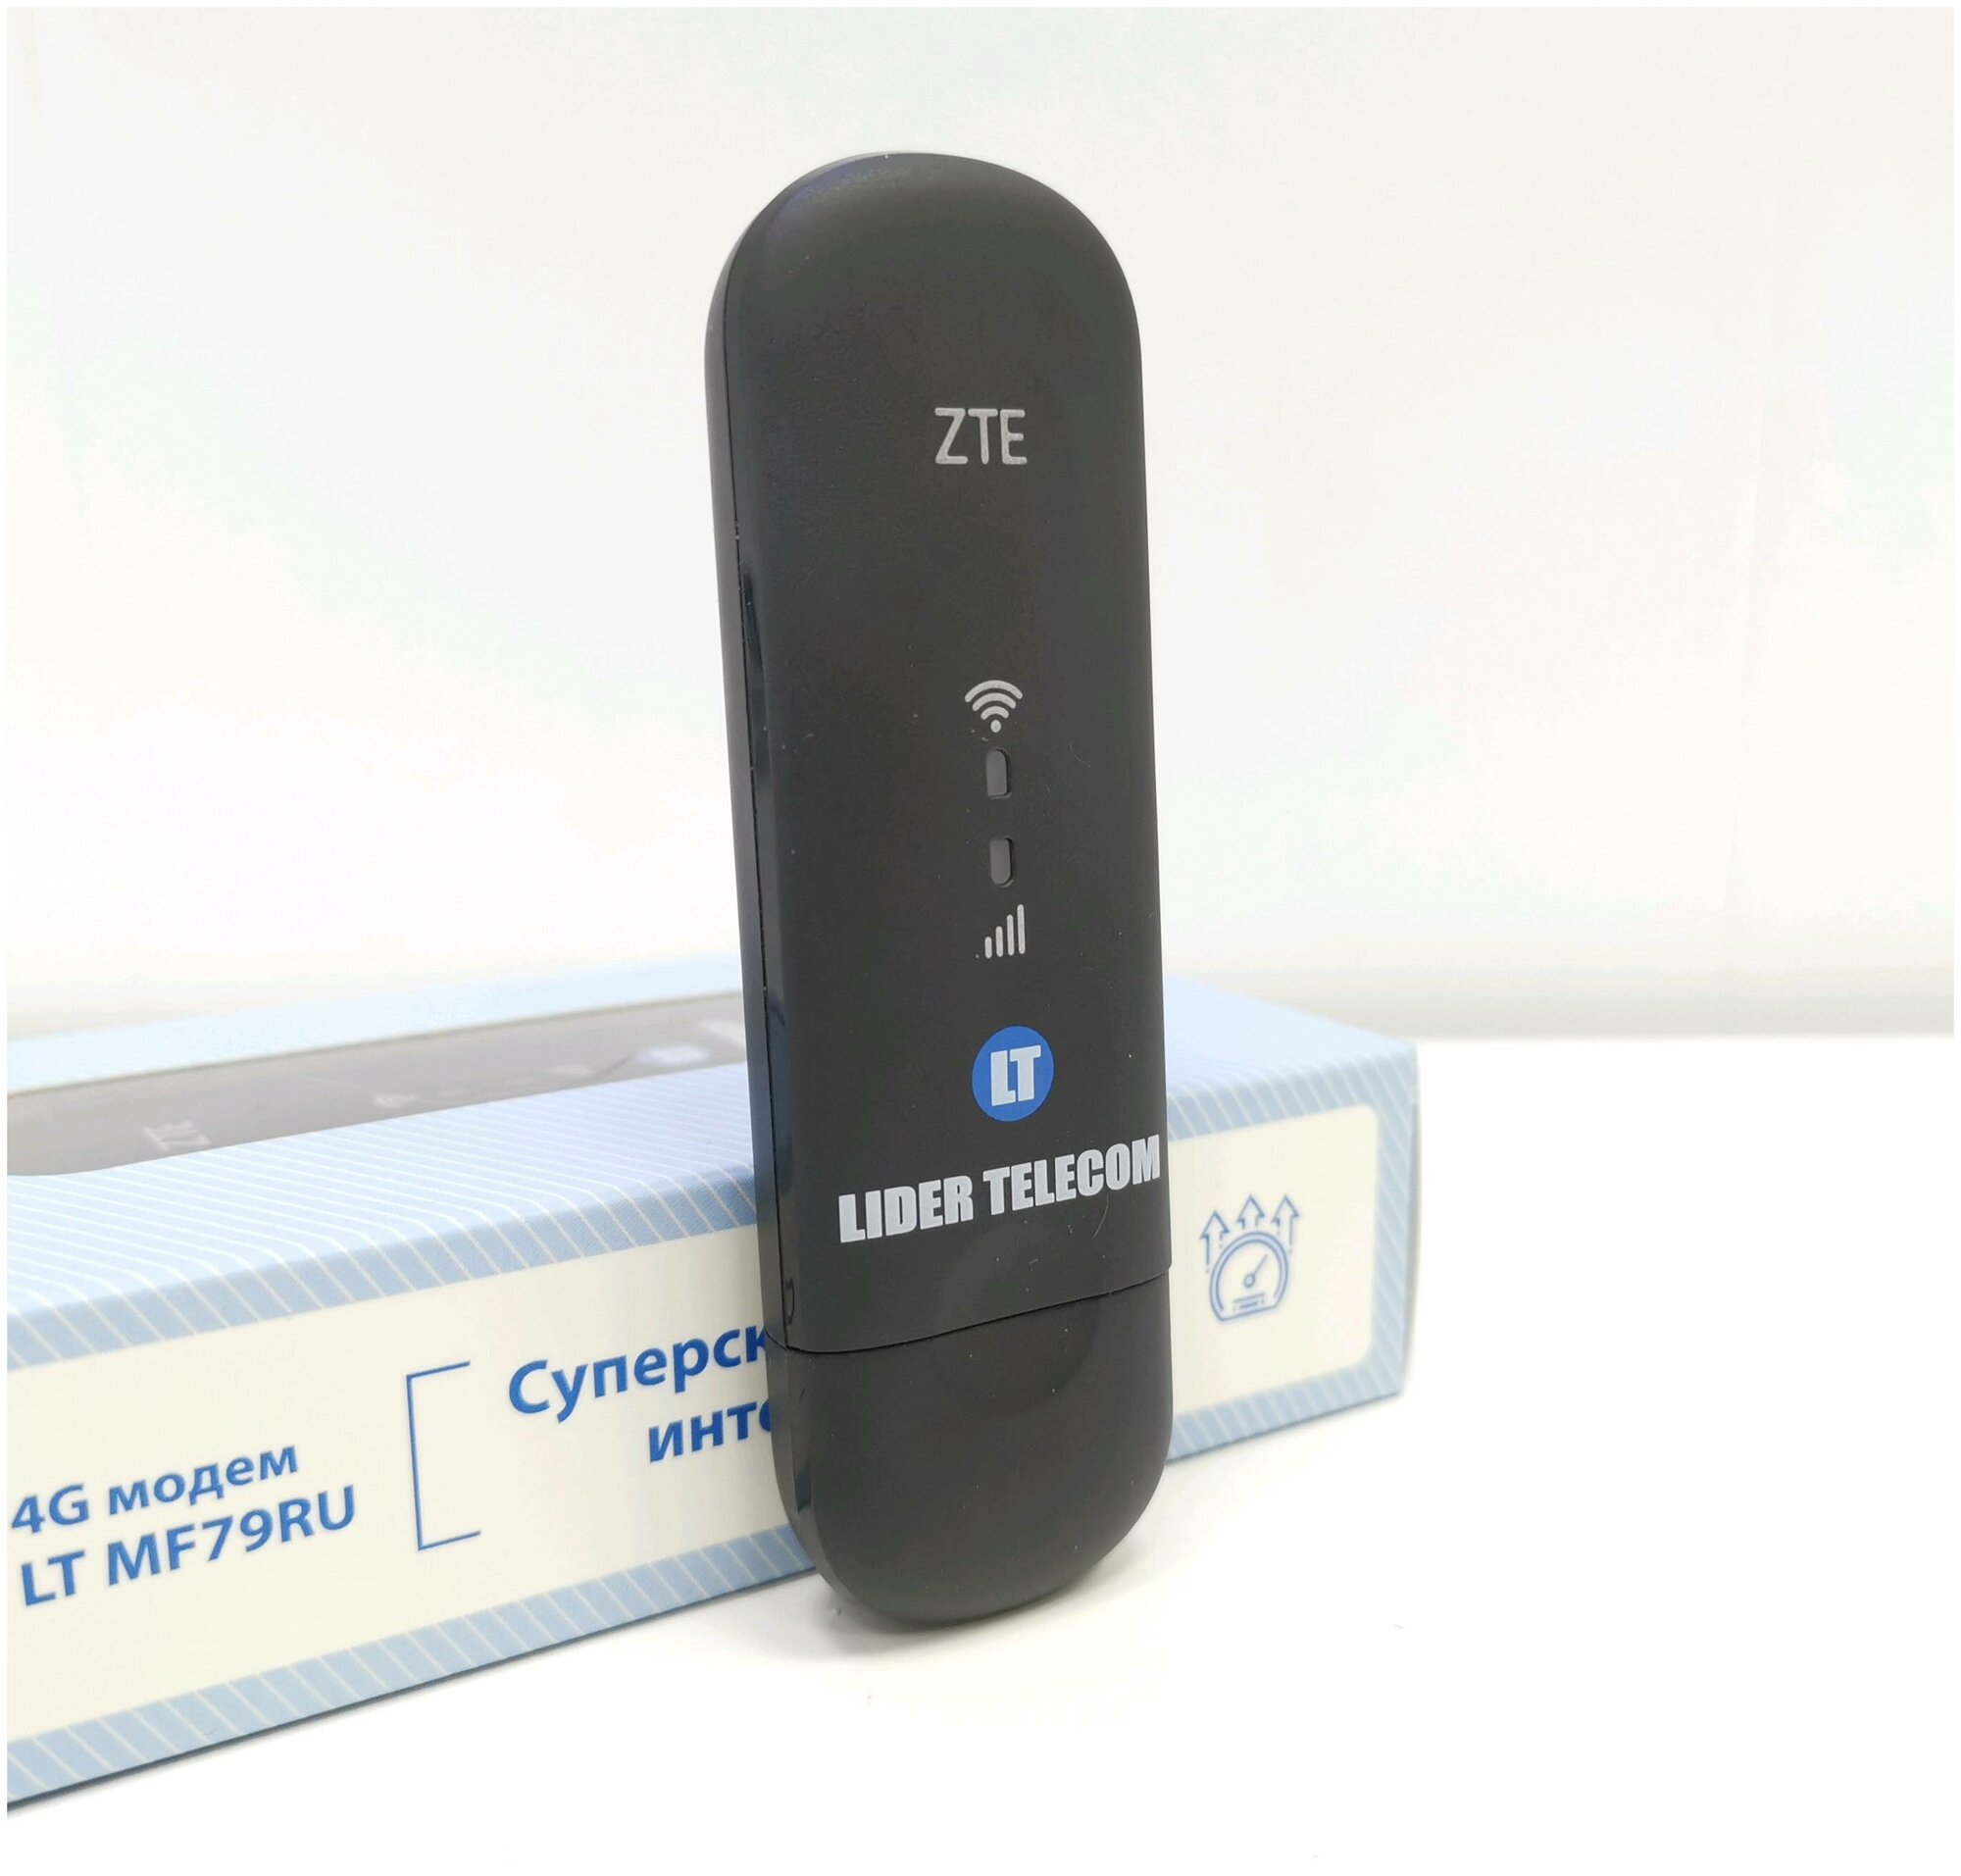 4G WiFi Роутер - Модем ZTE 79U(RU) PRO TTL iMEi под Безлимитный Интернет LTE MiMO TS9 Универсальный Любой Оператор как Huawei